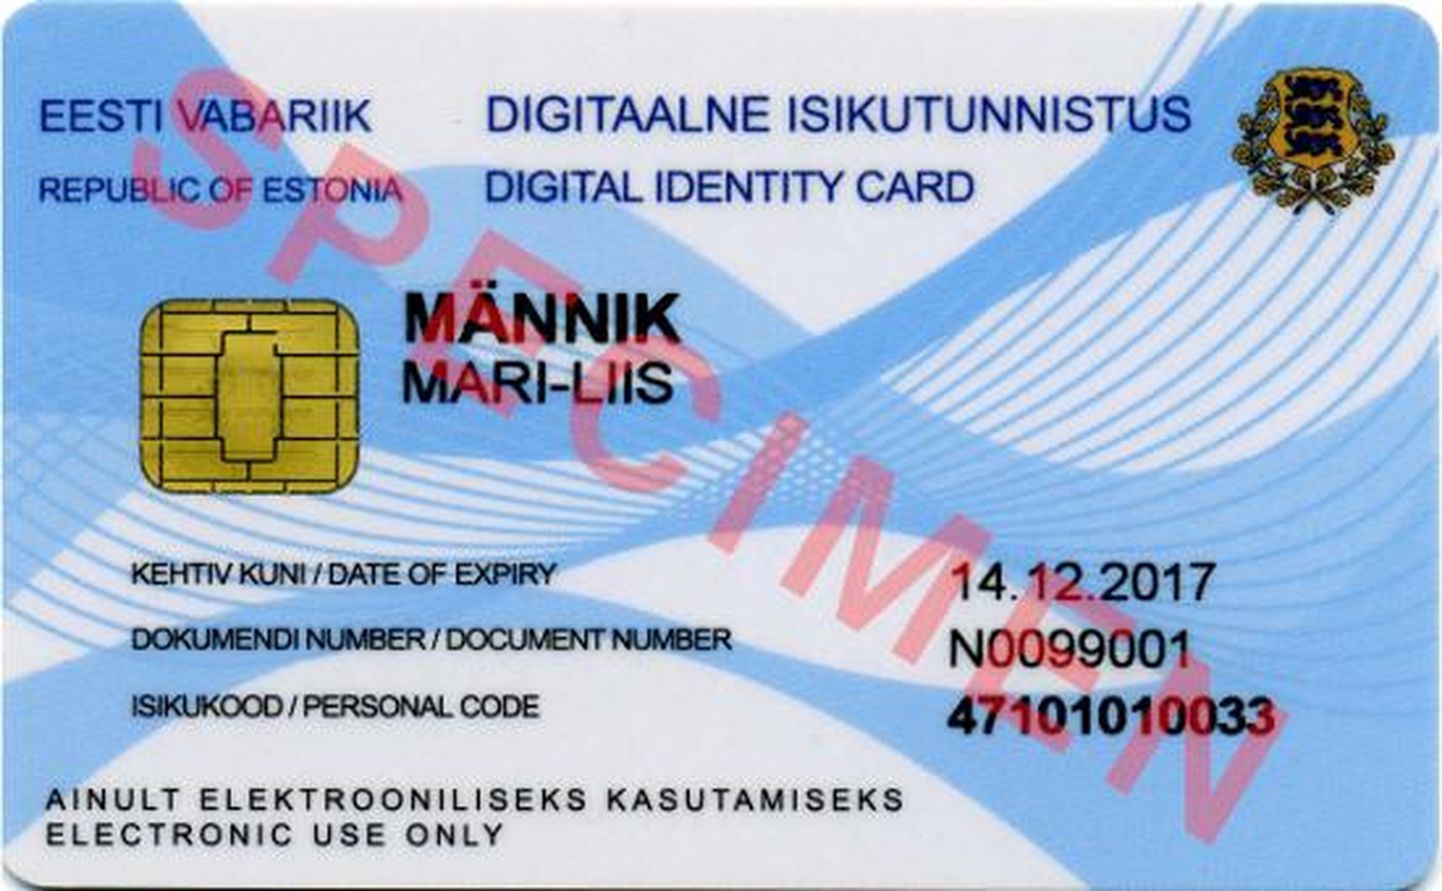 Kolmeaastase kehtivusega digi-ID-kaartide kehtivusaega saab nüüd pikendada viie aasta peale.